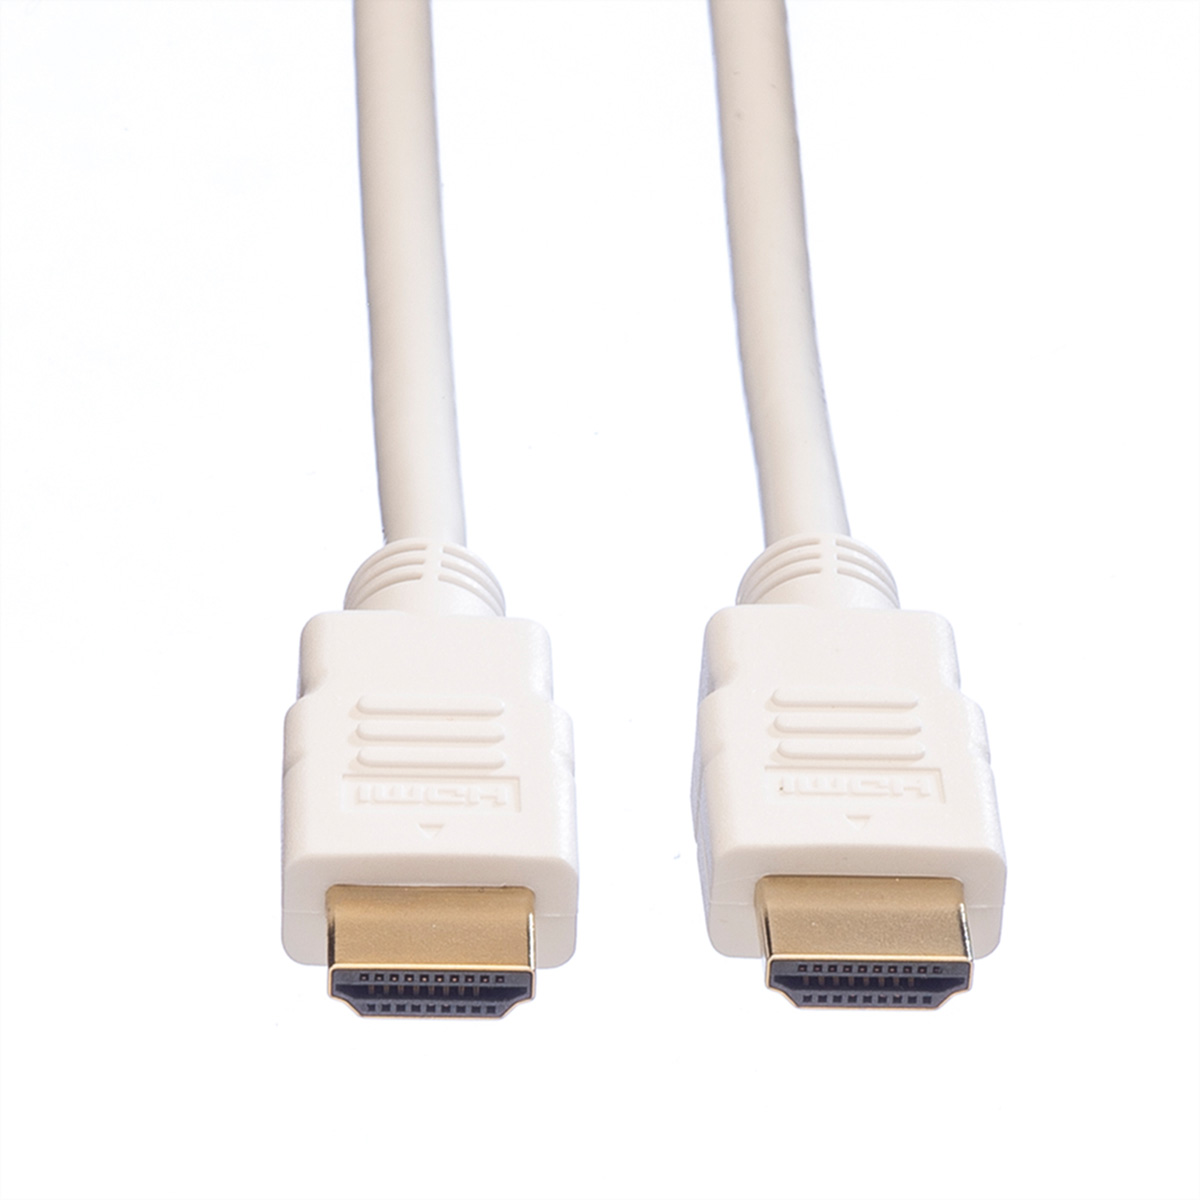 ROLINE HDMI High Speed Kabel mit Ethernet weiss 2m